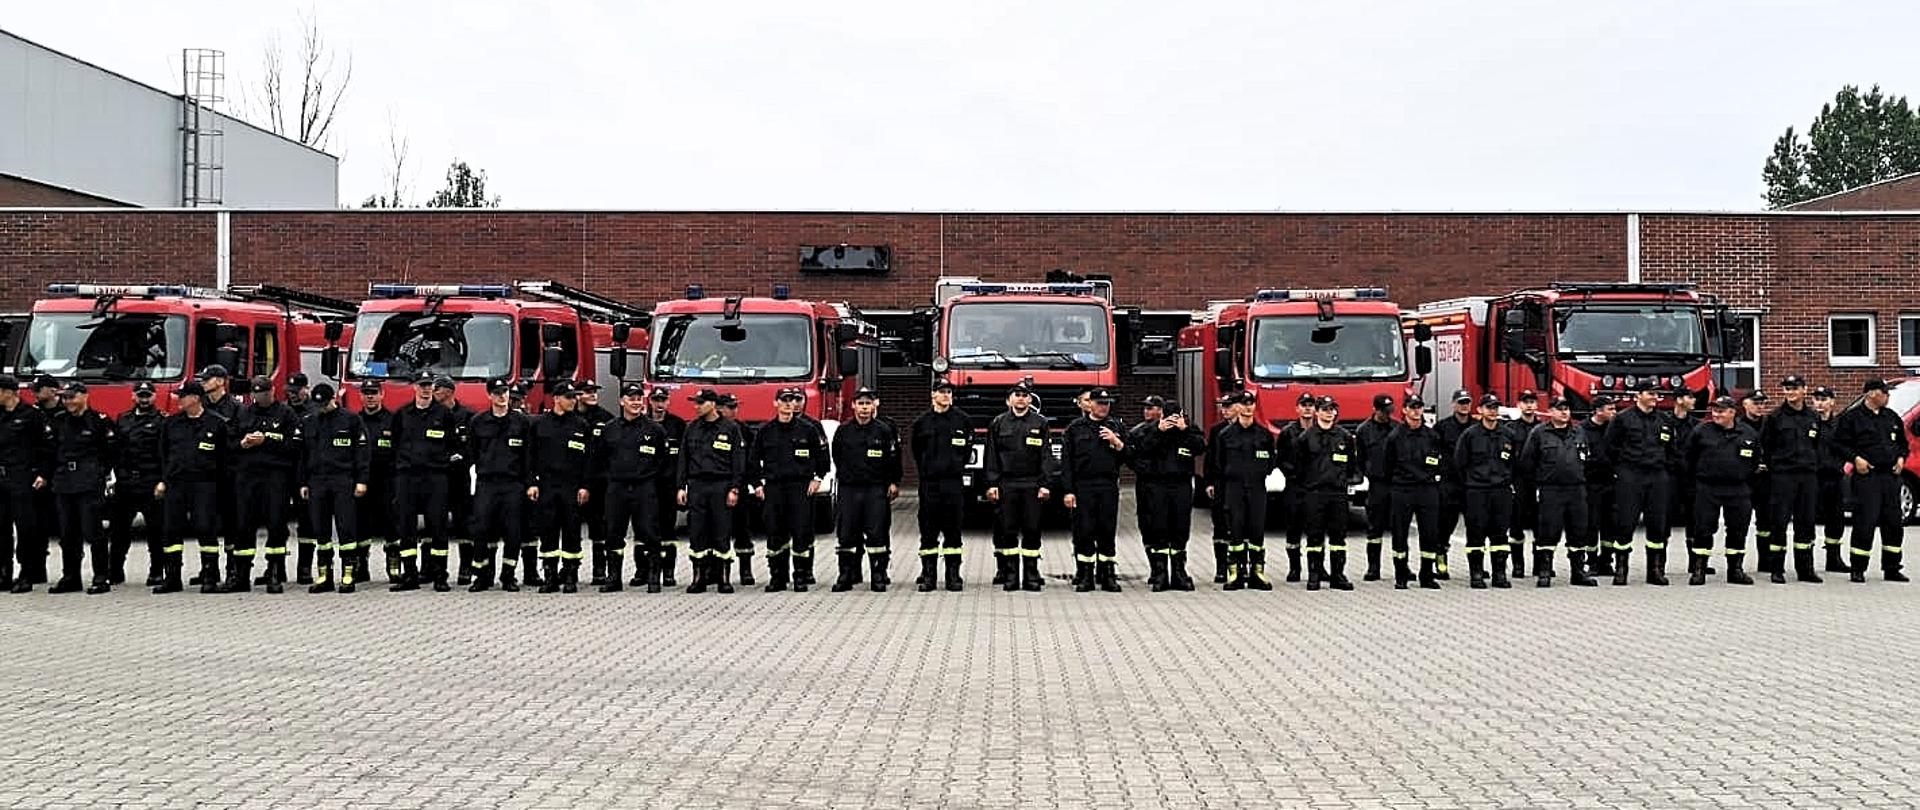 Strażacy ustanowieni w szeregu na tle wozów strażackich 